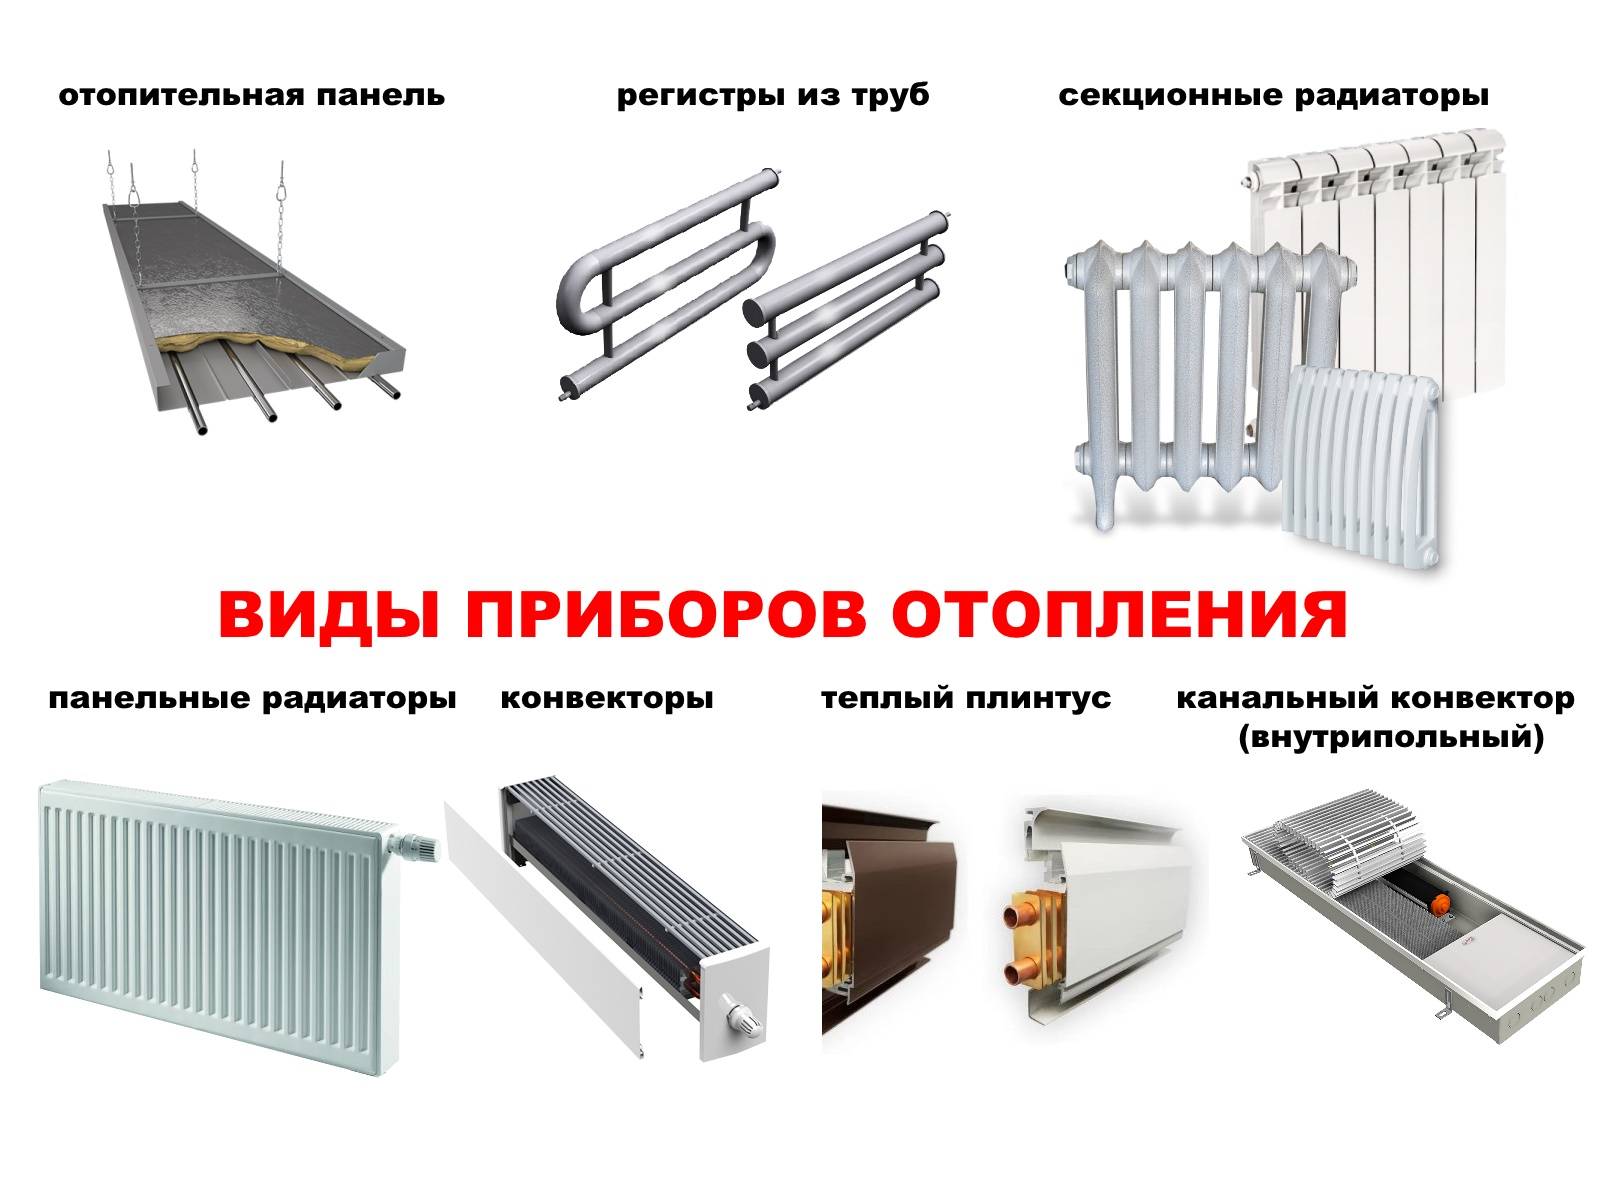 Характеристики алюминиевых радиаторов